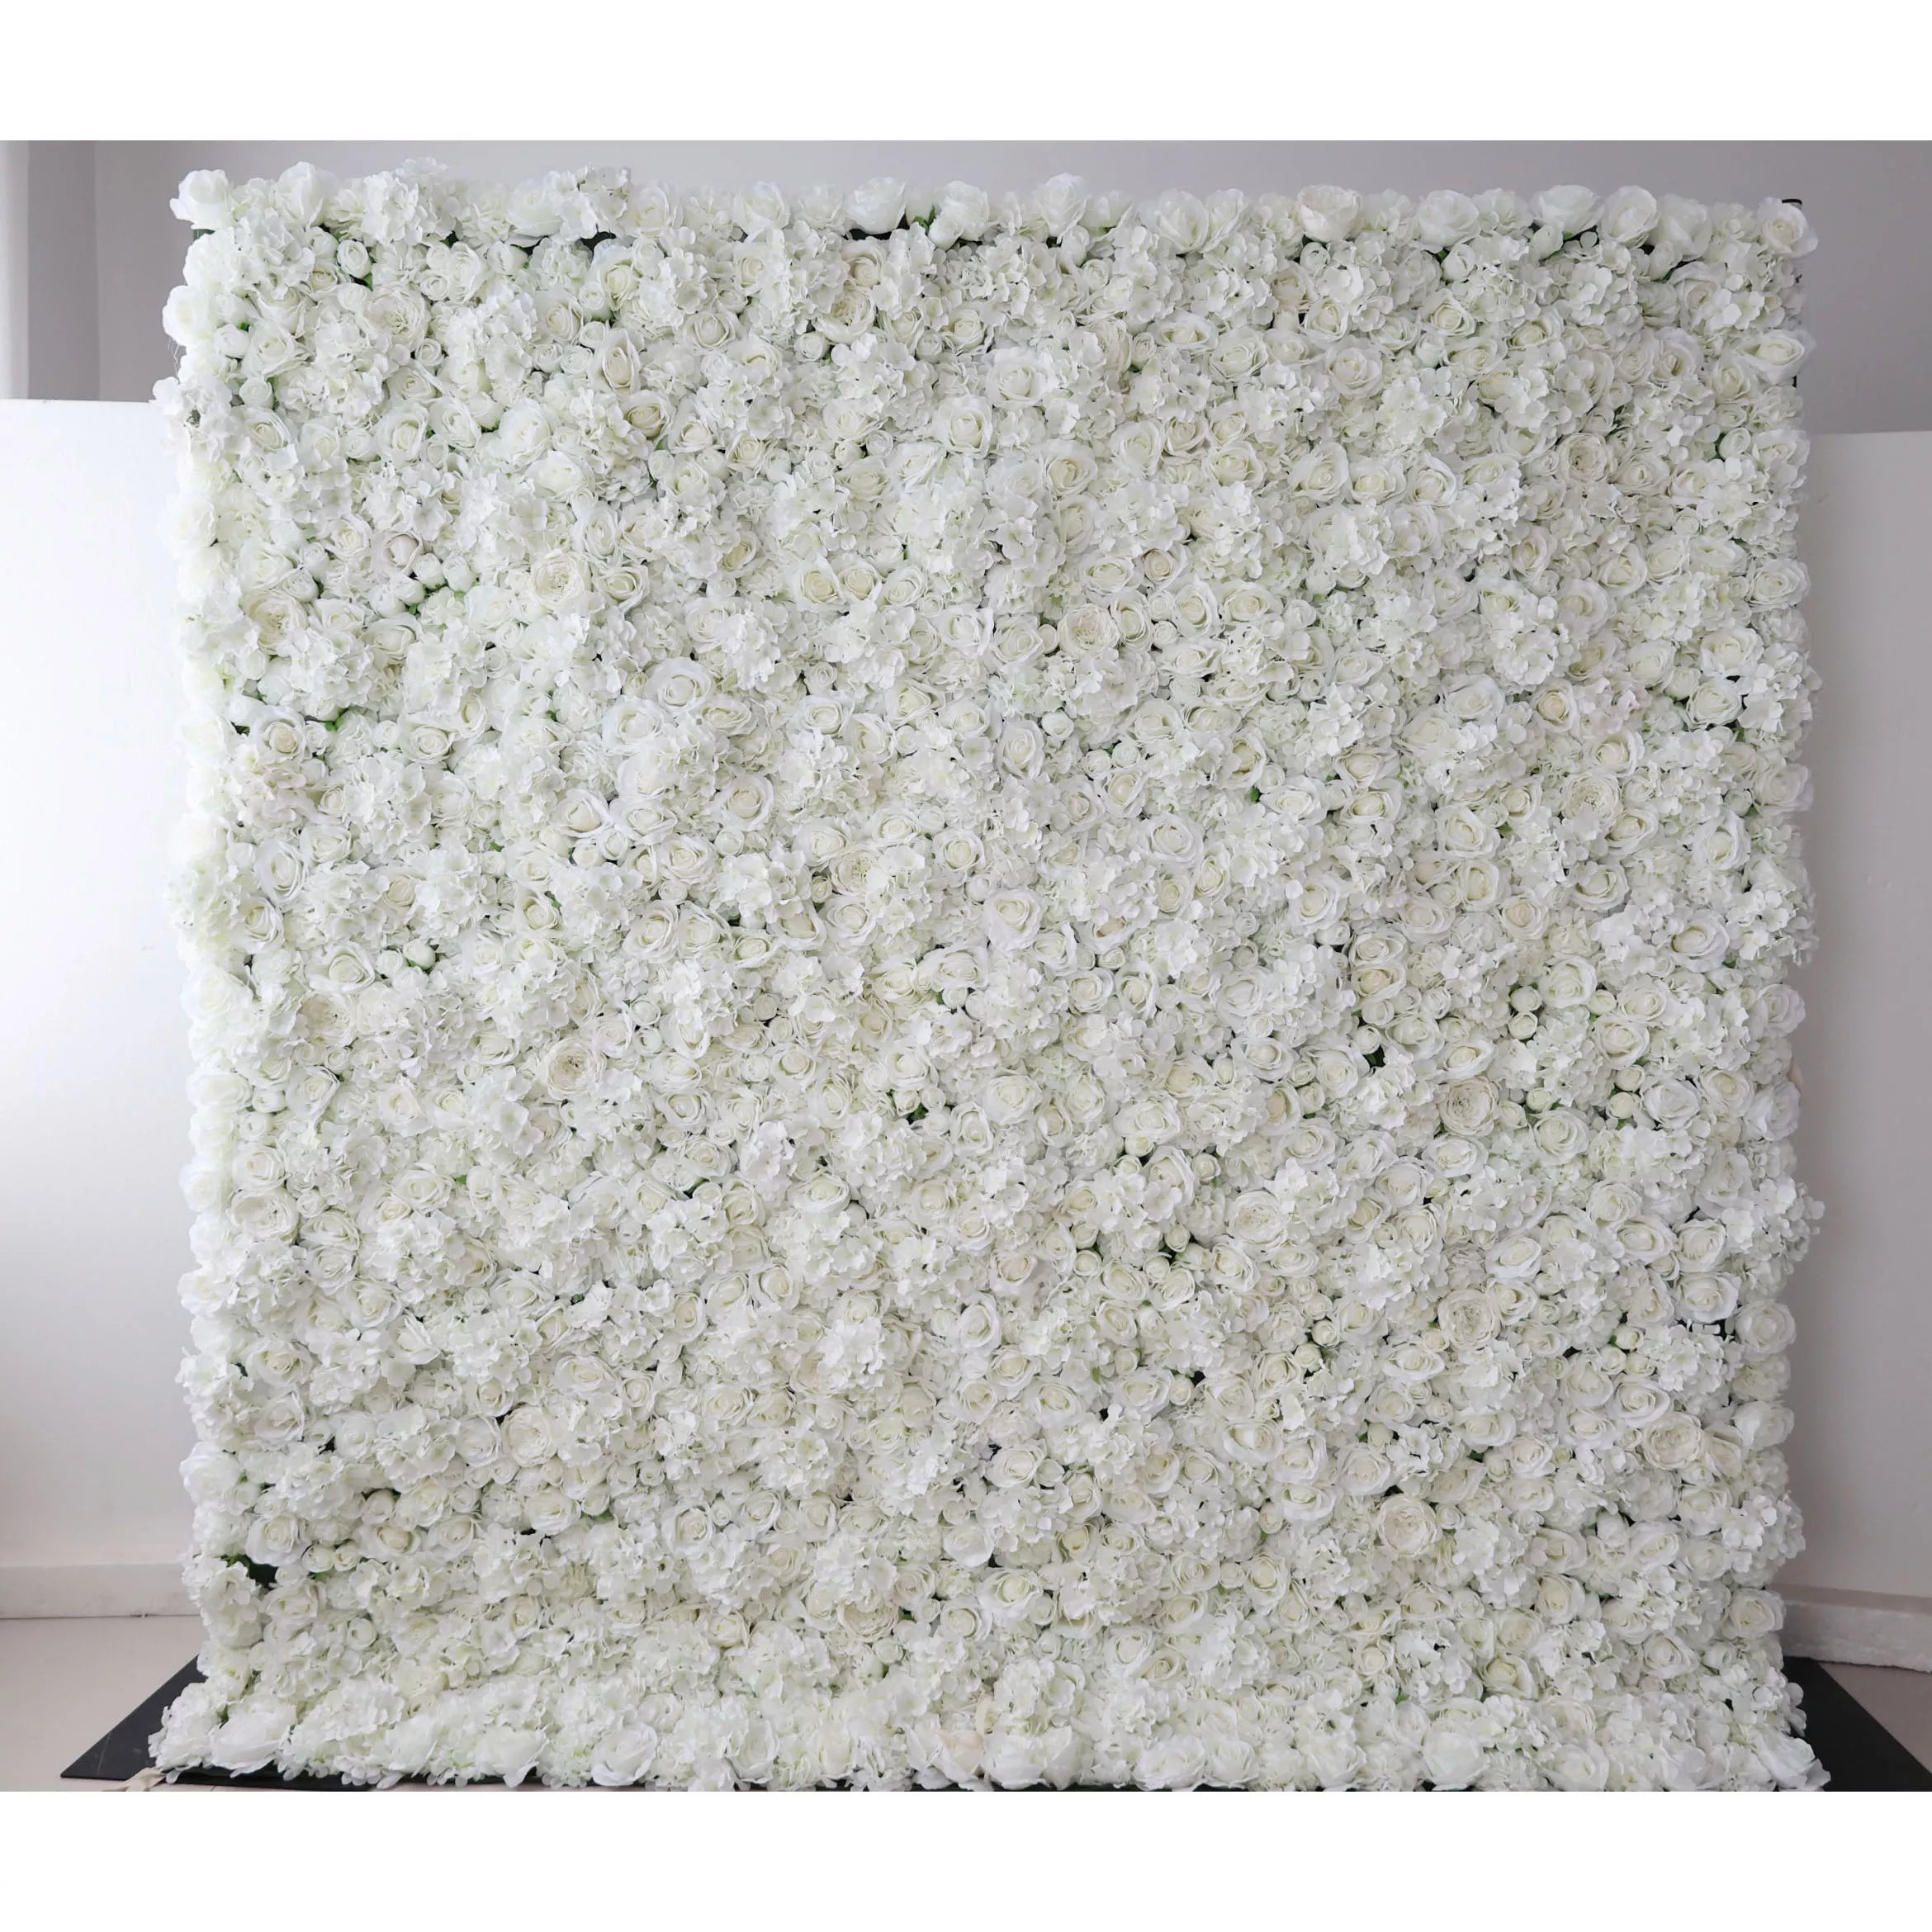 زهرة فالار قماش صناعي نقي أبيض خلفية جدار زهور الزفاف ، ديكور حفلات زهور ، حدث